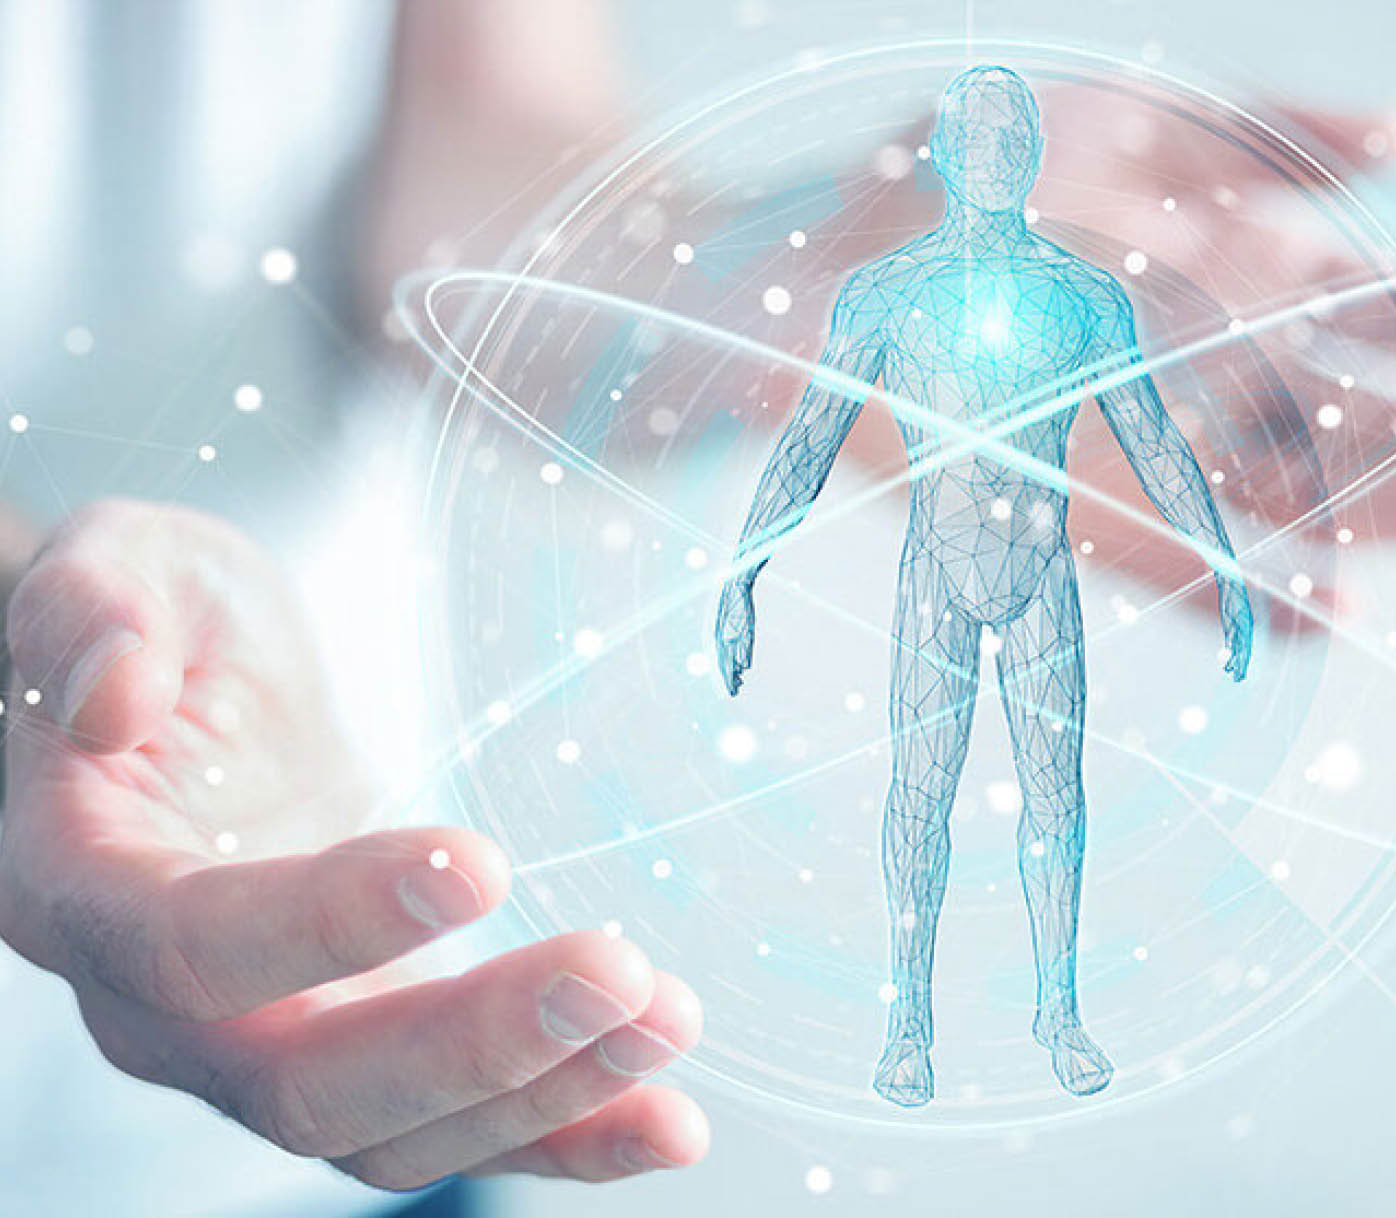 Futuristische medizinische Darstellung mit 3D-Illustration eines menschlichen Körpers